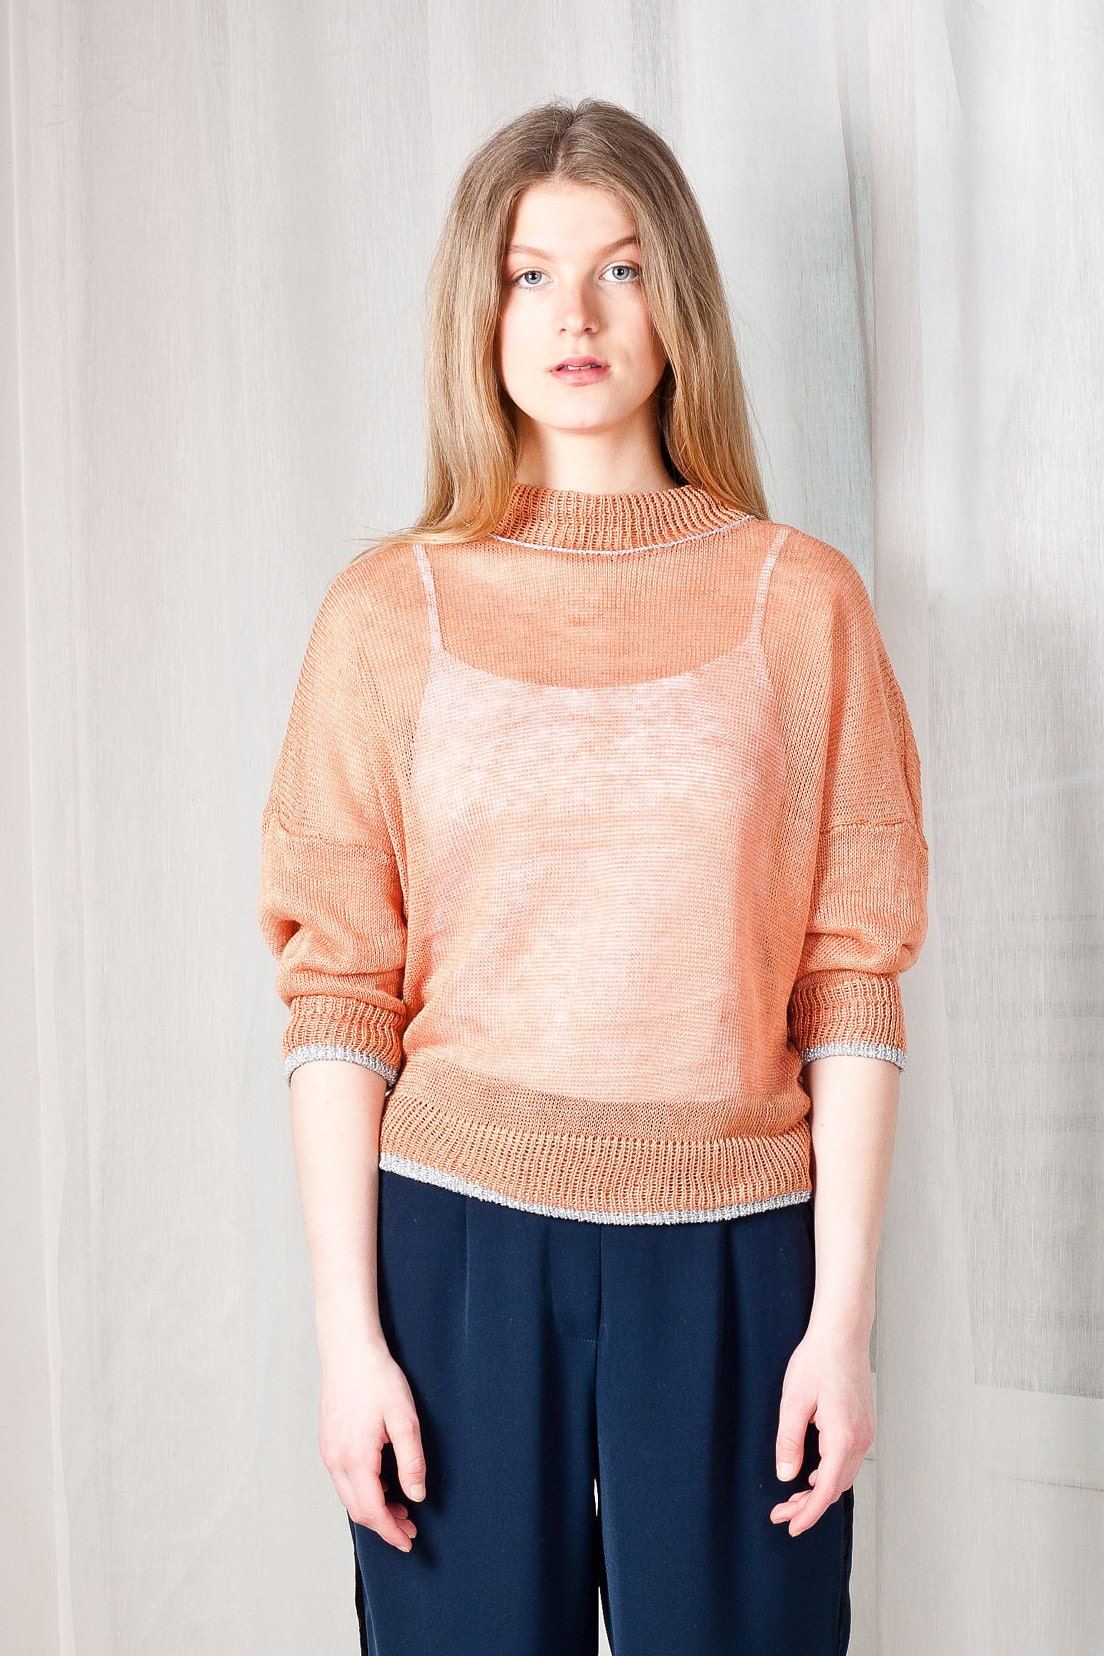 Linen Sweater Knit Linen Sweater Linen Pullover Linen Top - Etsy UK